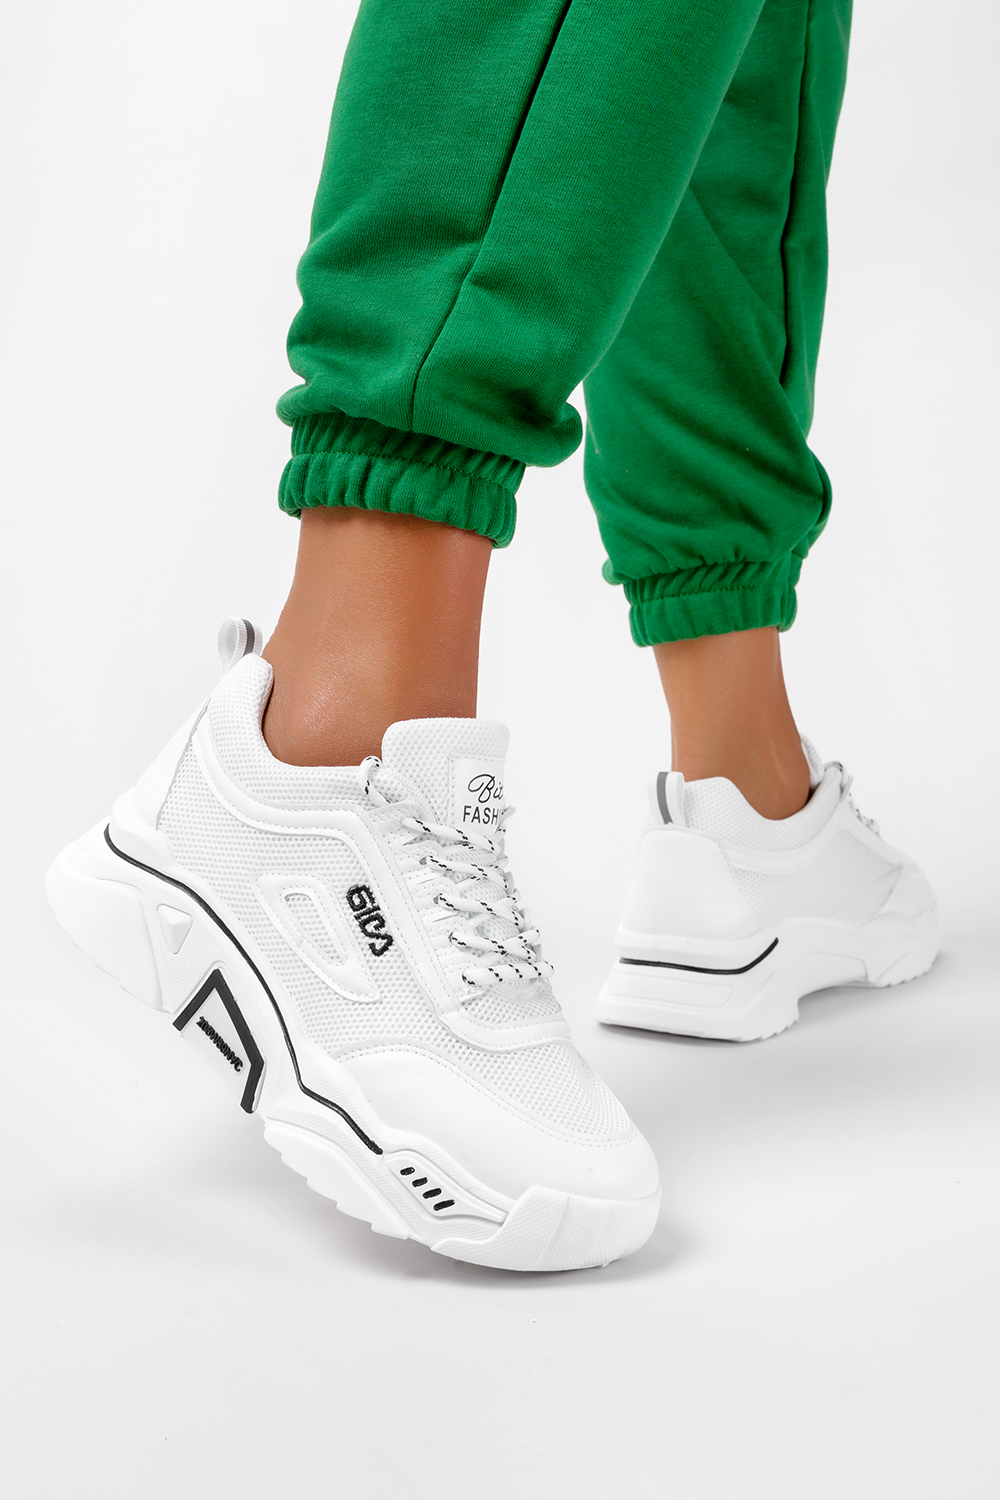 Białe sneakersy na platformie buty sportowe sznurowane Casu 23-11-21-W Casu